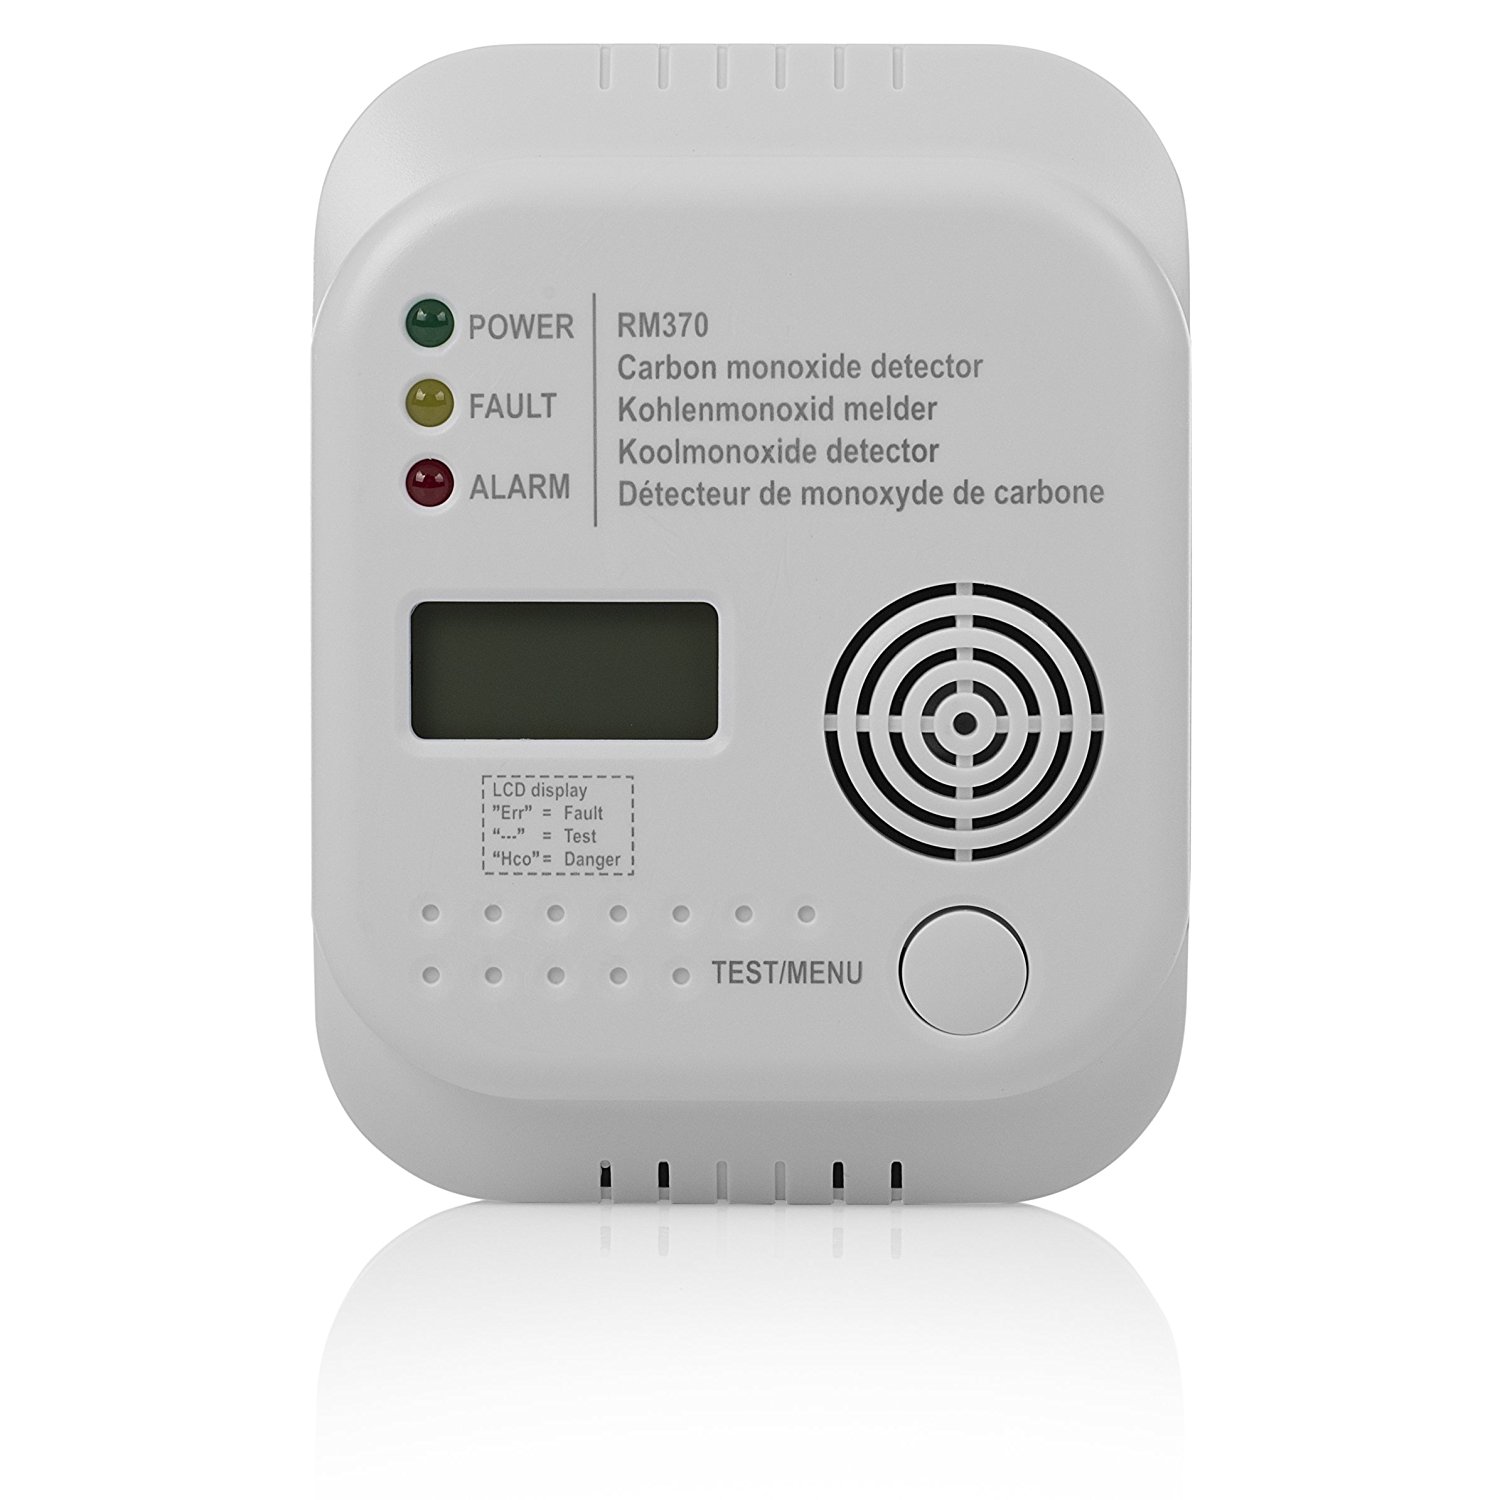 Smartwares Kohlenmonoxid Melder RM370: Der CO-Warner für Zuhause